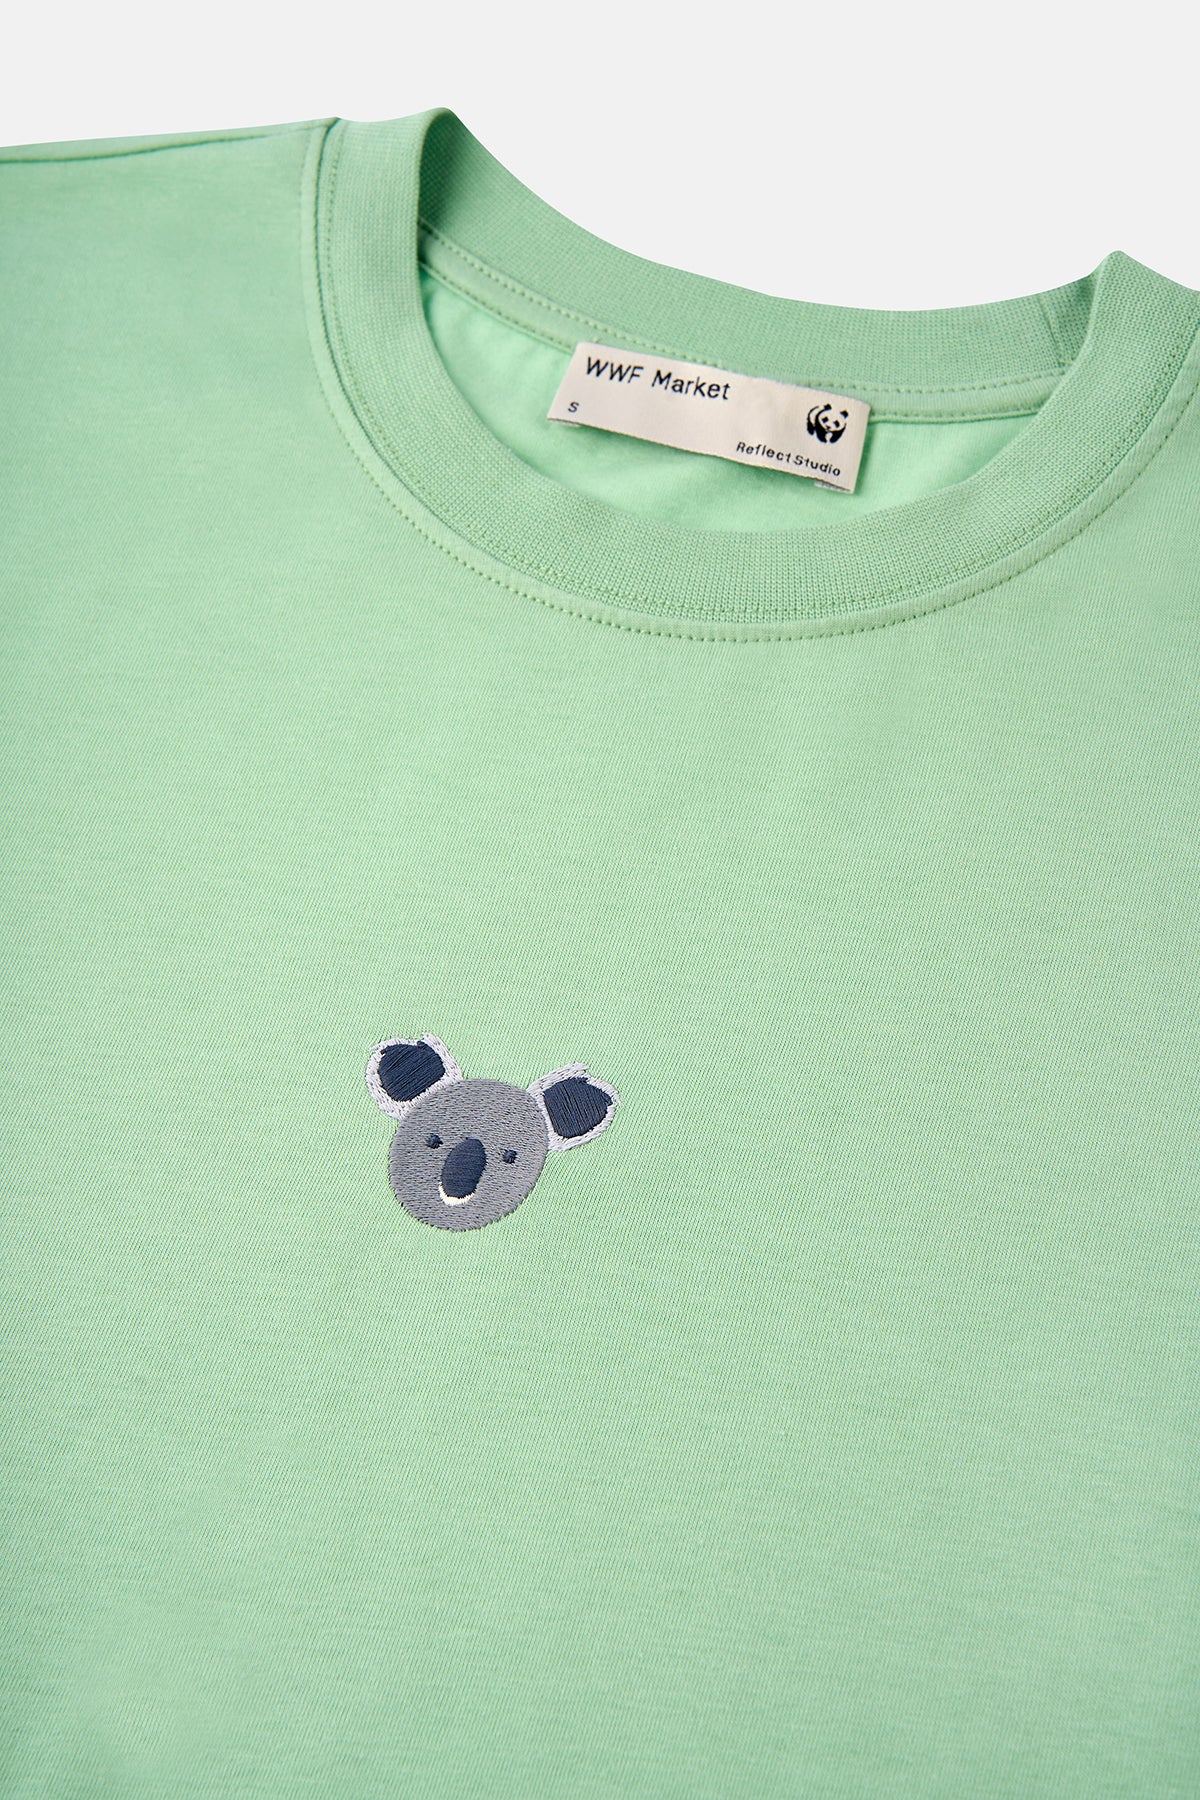 Koala Supreme Kadın T-shirt  - Su Yeşili